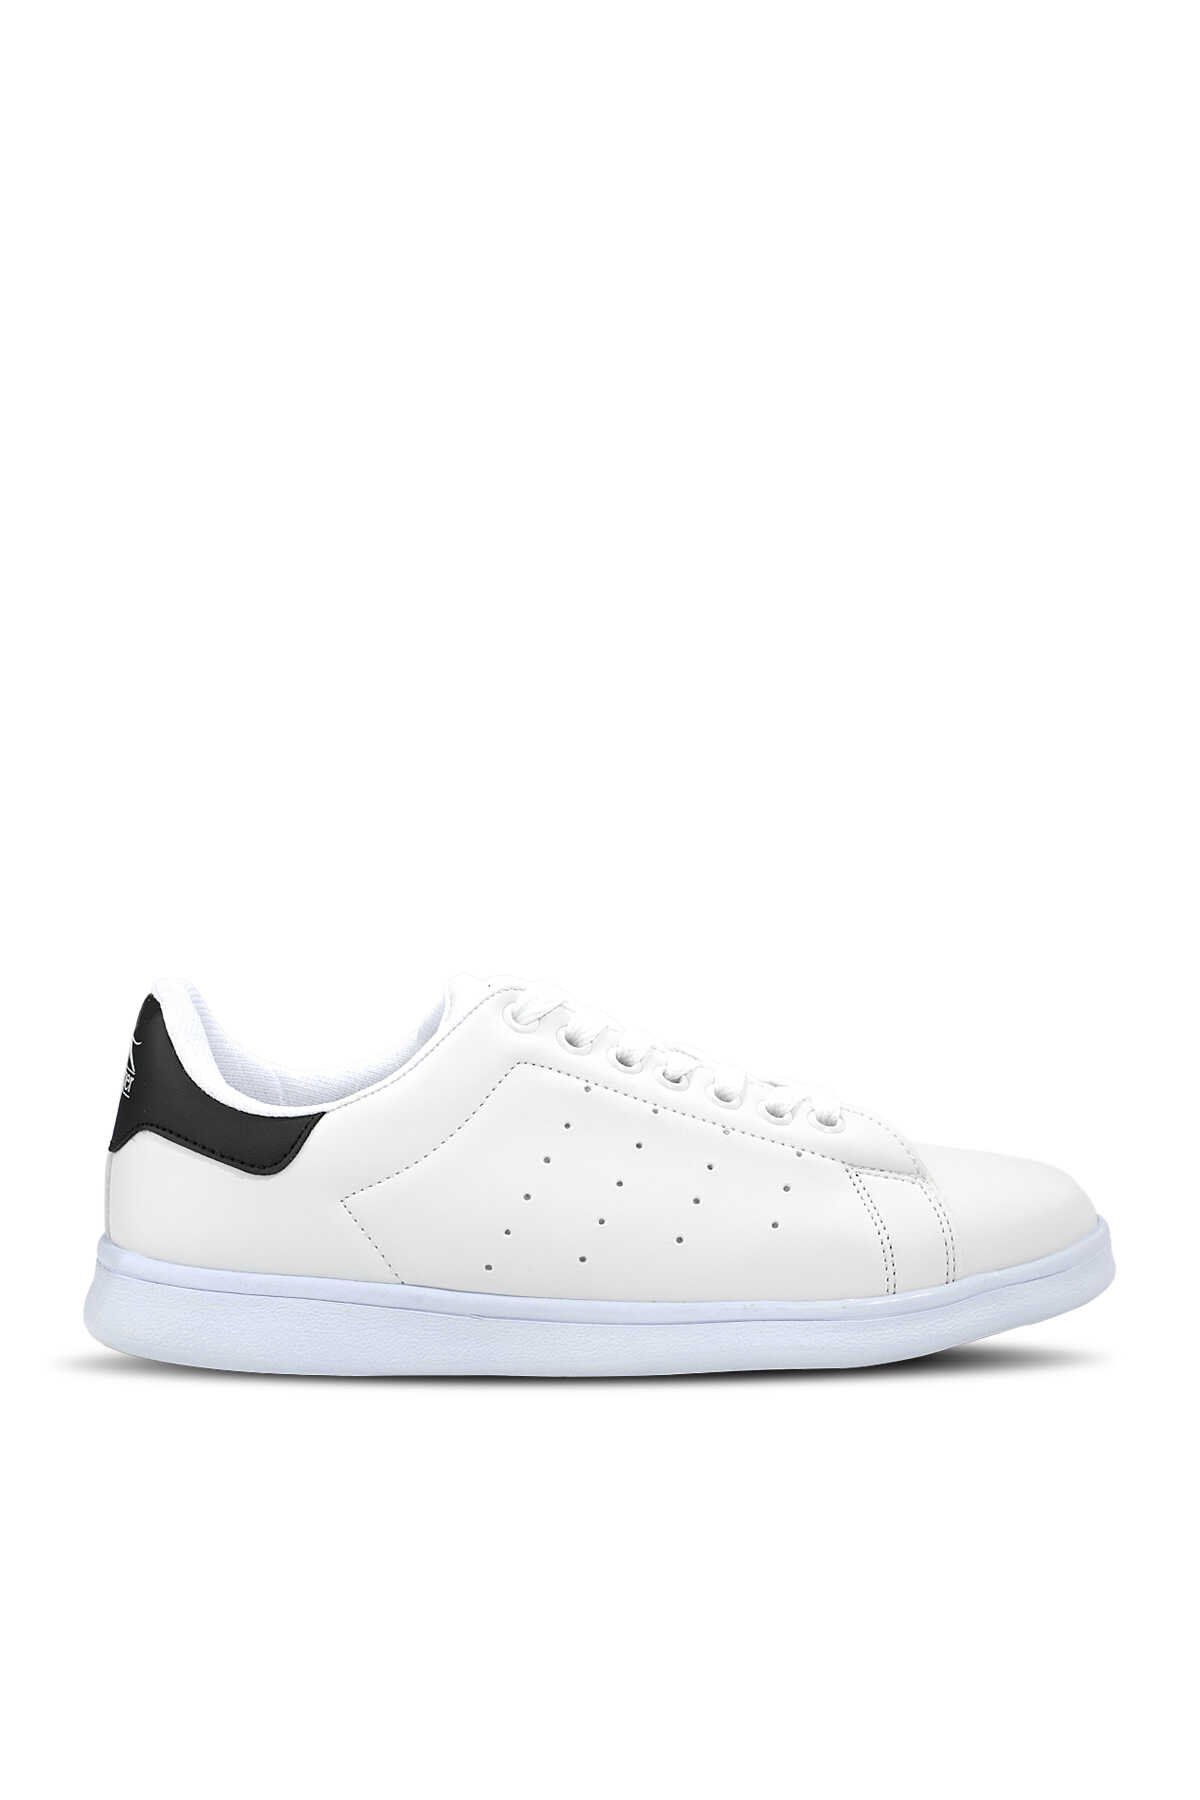 Slazenger - Slazenger IBTIHAJ Sneaker Kadın Ayakkabı Beyaz / Siyah